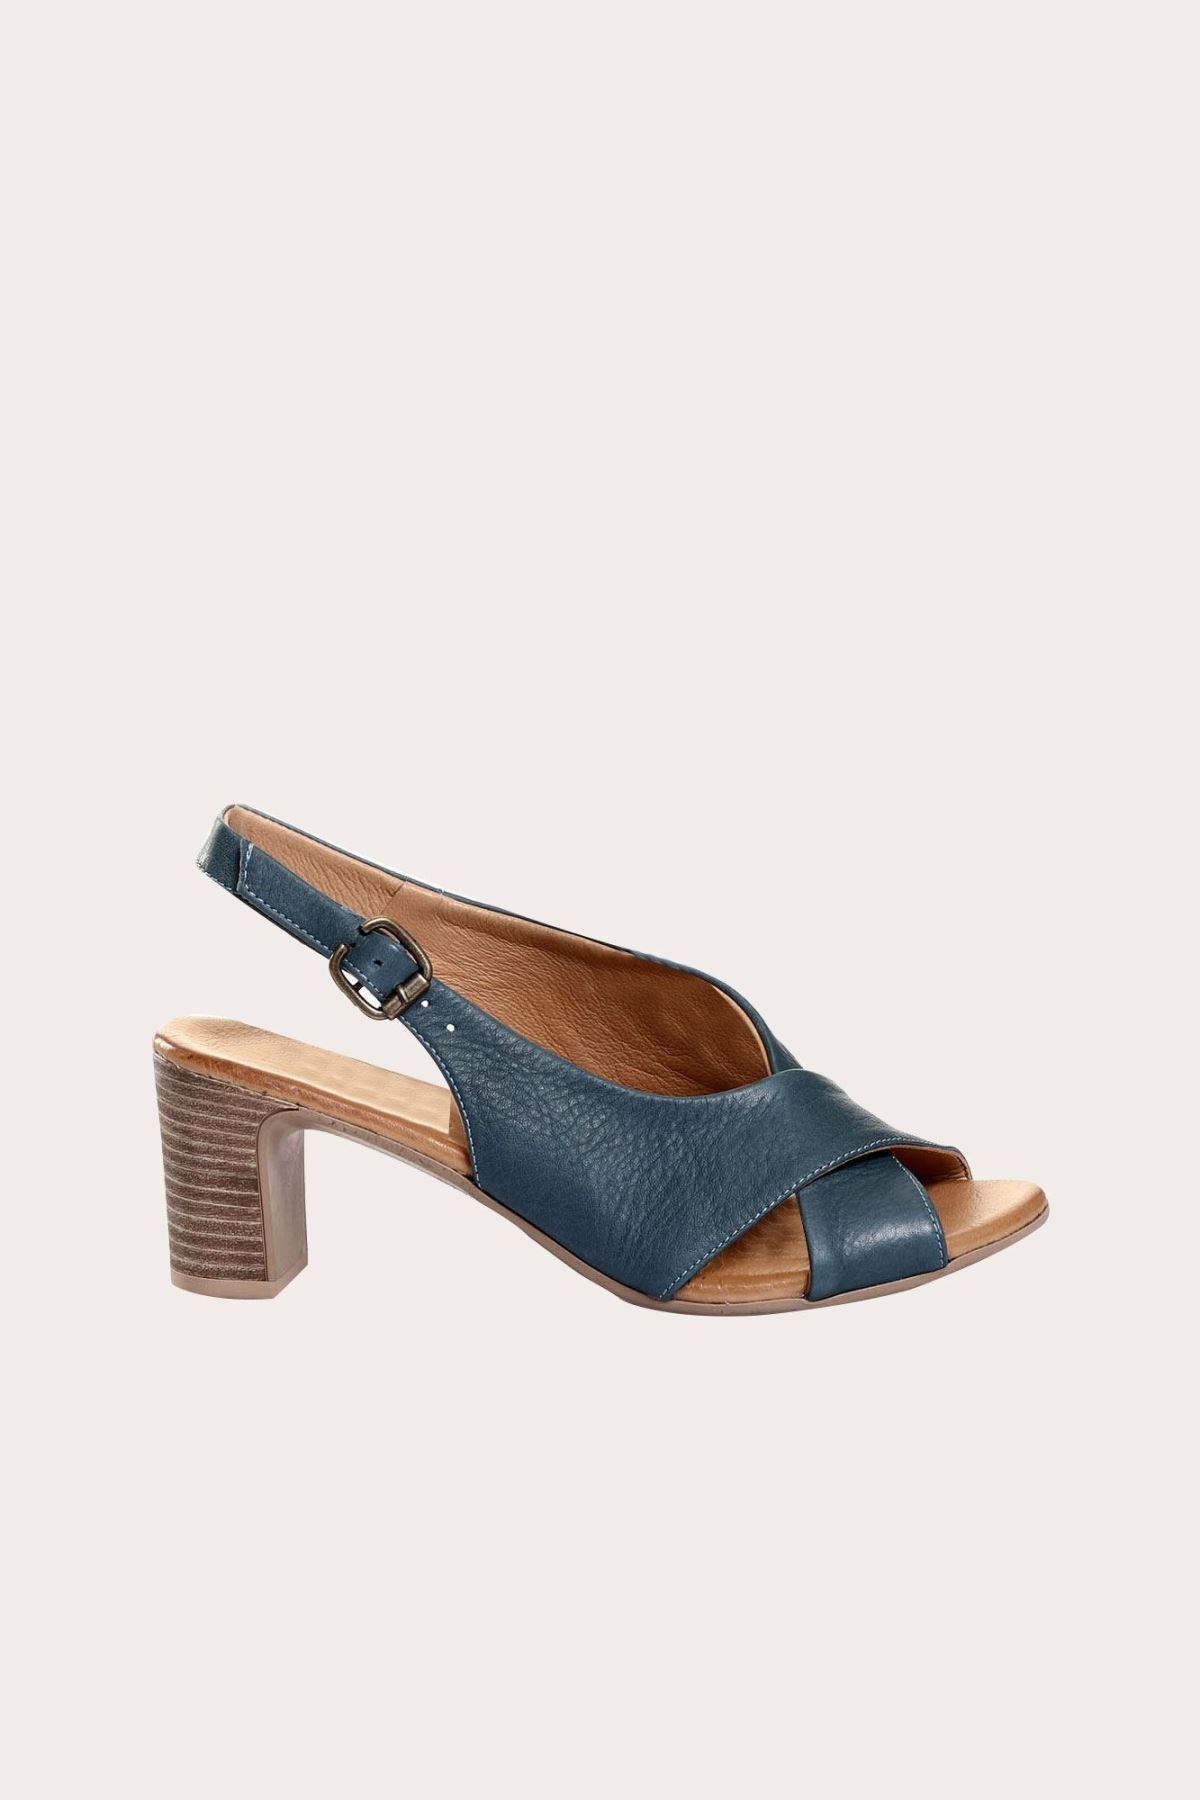 BUENO Shoes Mavi Deri Kadın Topuklu Ayakkabı